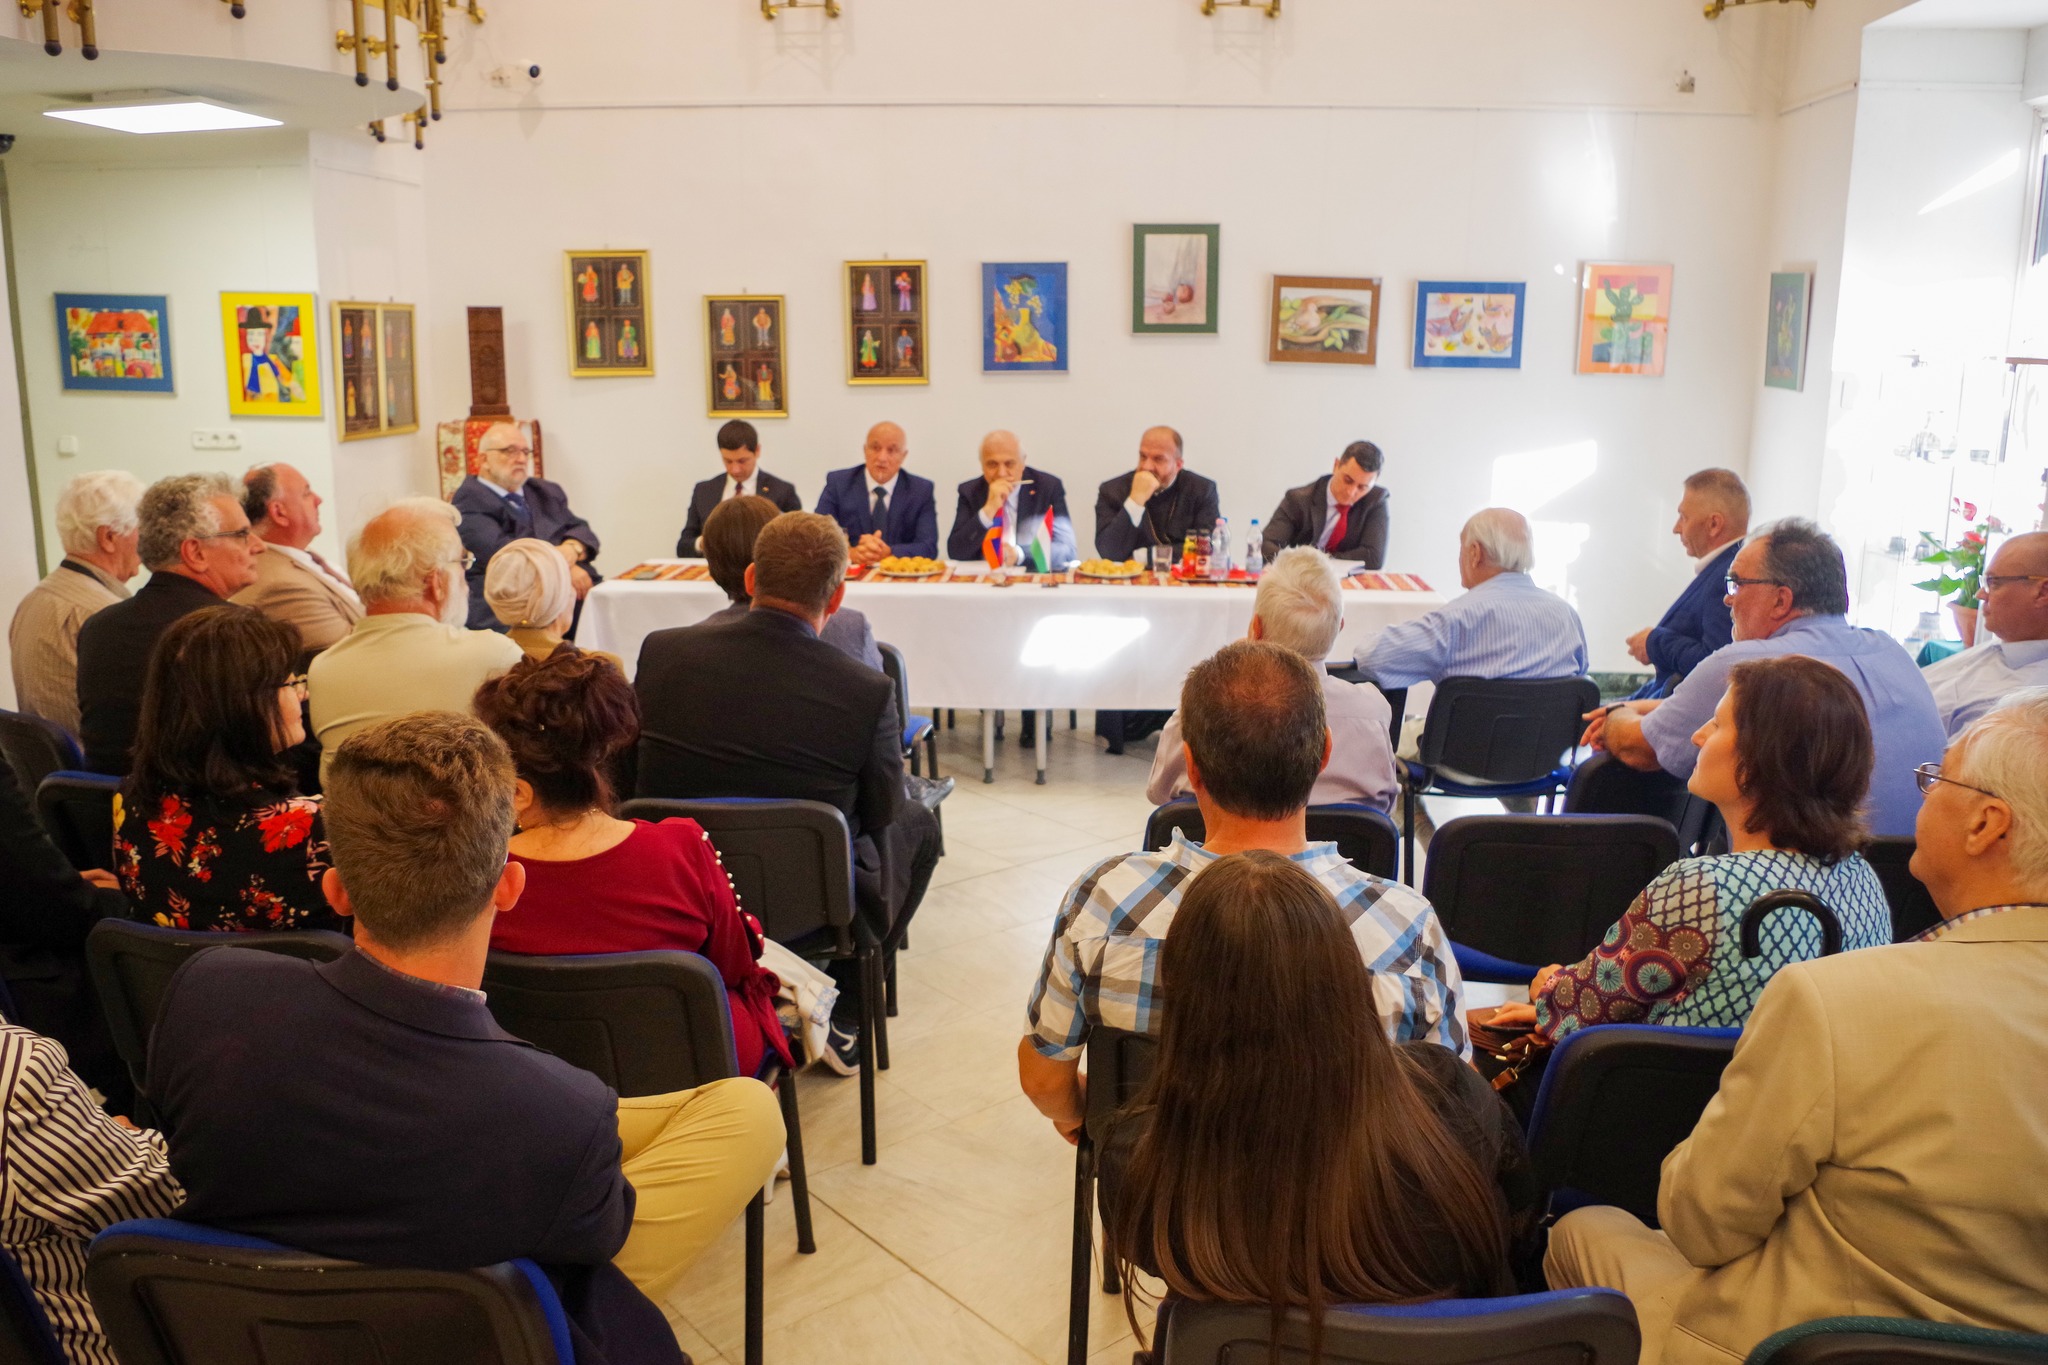 Ashot Smbatyan Örményország magyarországi nagykövete ma délután a hazai örmény közösség önkormányzati vezetőit látta vendégül az Örmény Kulturális Központban